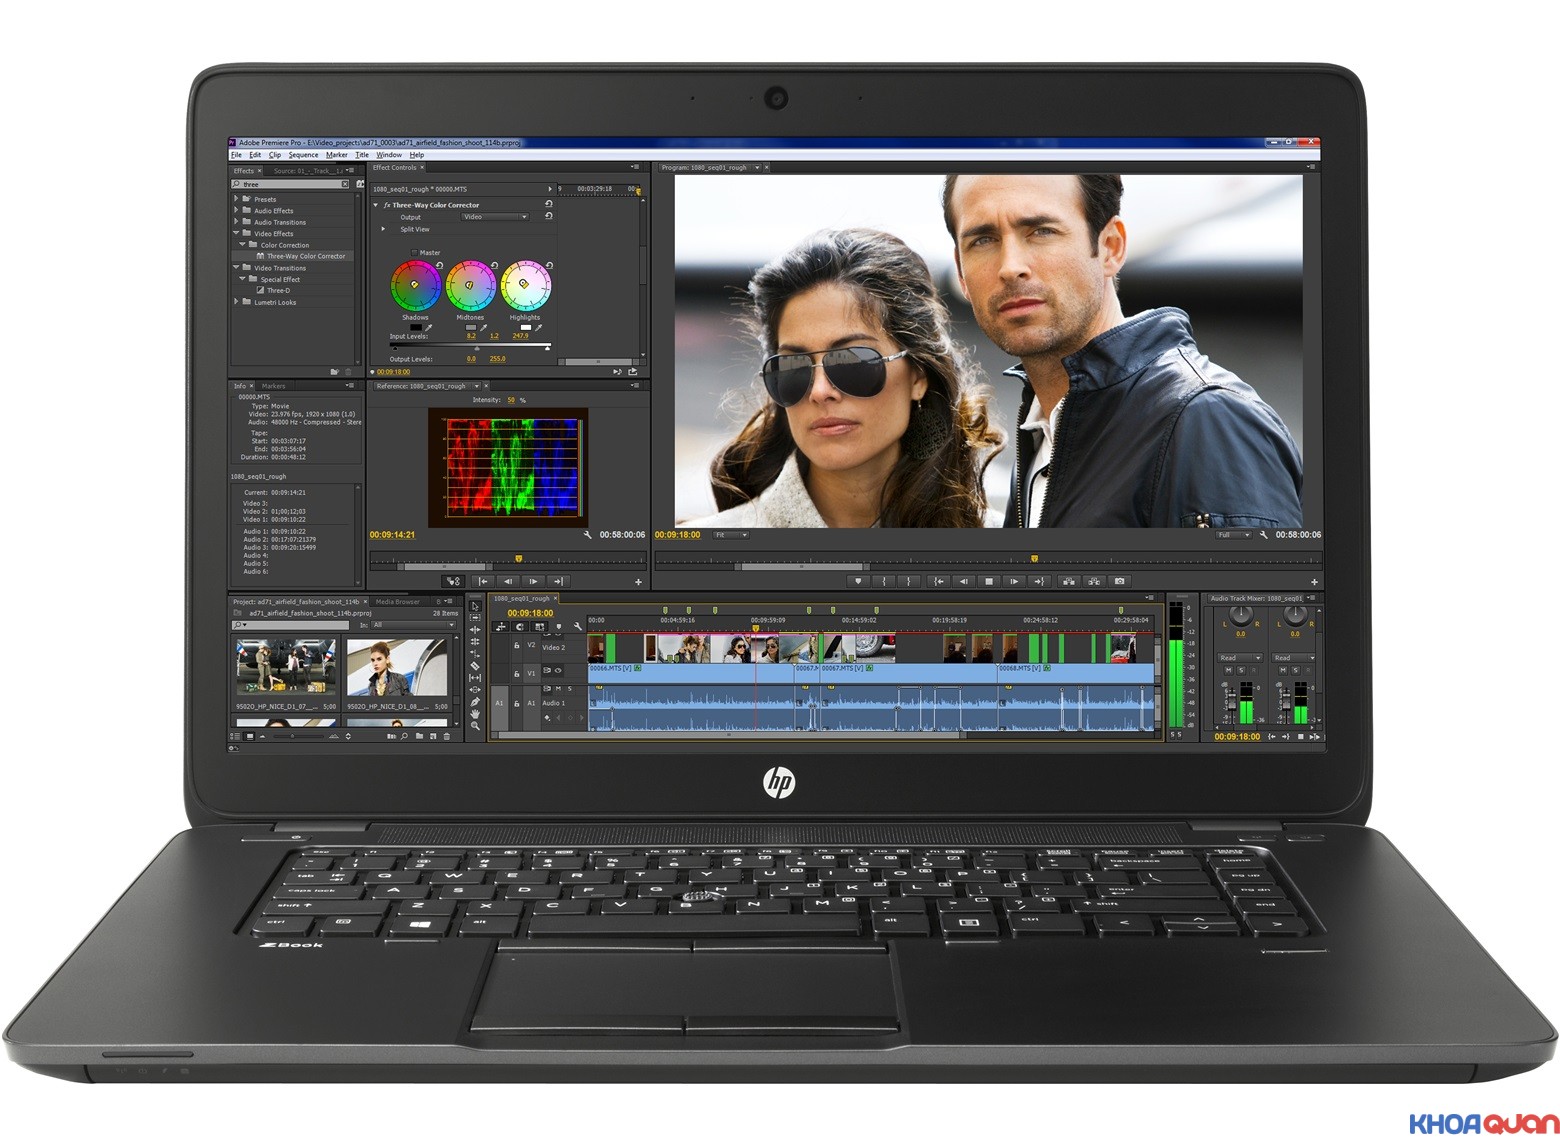 Giới thiệu về dòng Laptop HP zbook 15 chuyên cho đồ họa